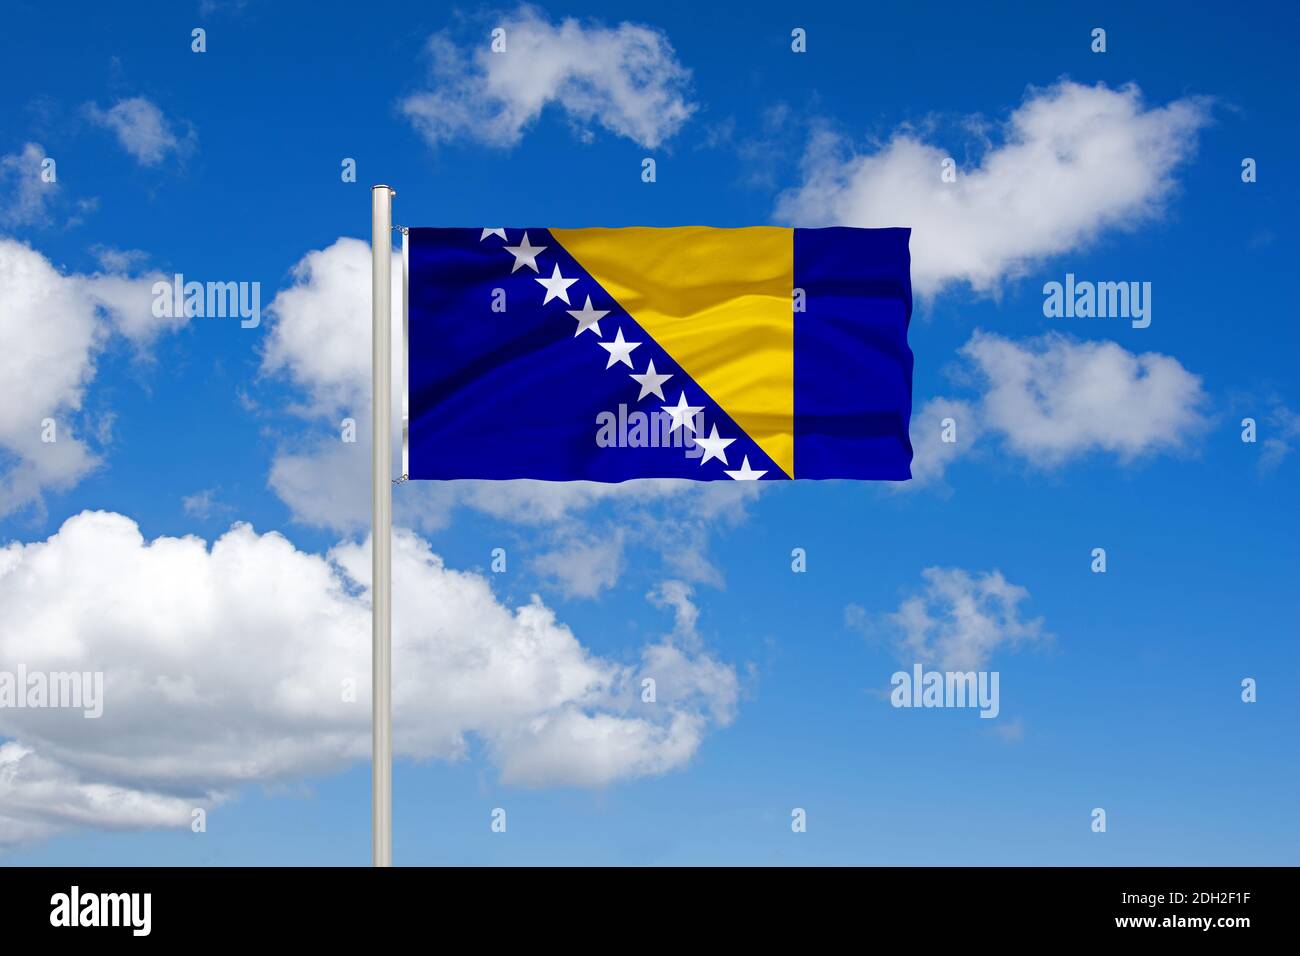 Bosnien Und Herzegowina Flagge Schmetterling Fliegen, Isoliert Auf Weißem  Hintergrund Lizenzfreie Fotos, Bilder und Stock Fotografie. Image 14190743.